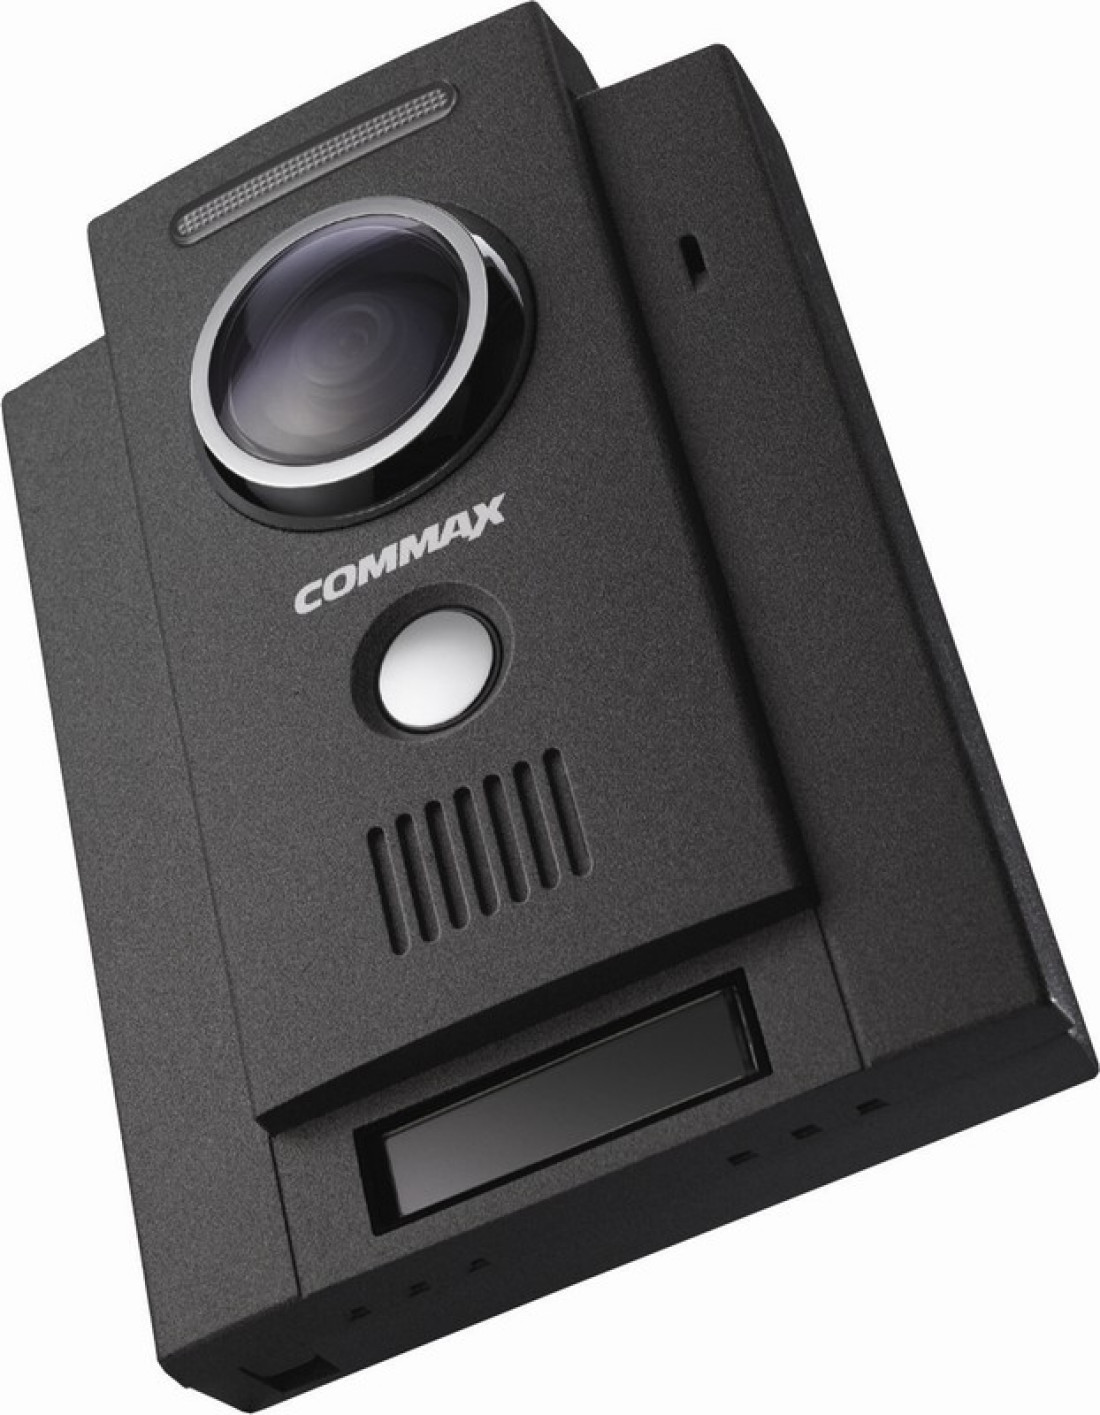 Rozszerzona funkcjonalność wideodomofonów Commax